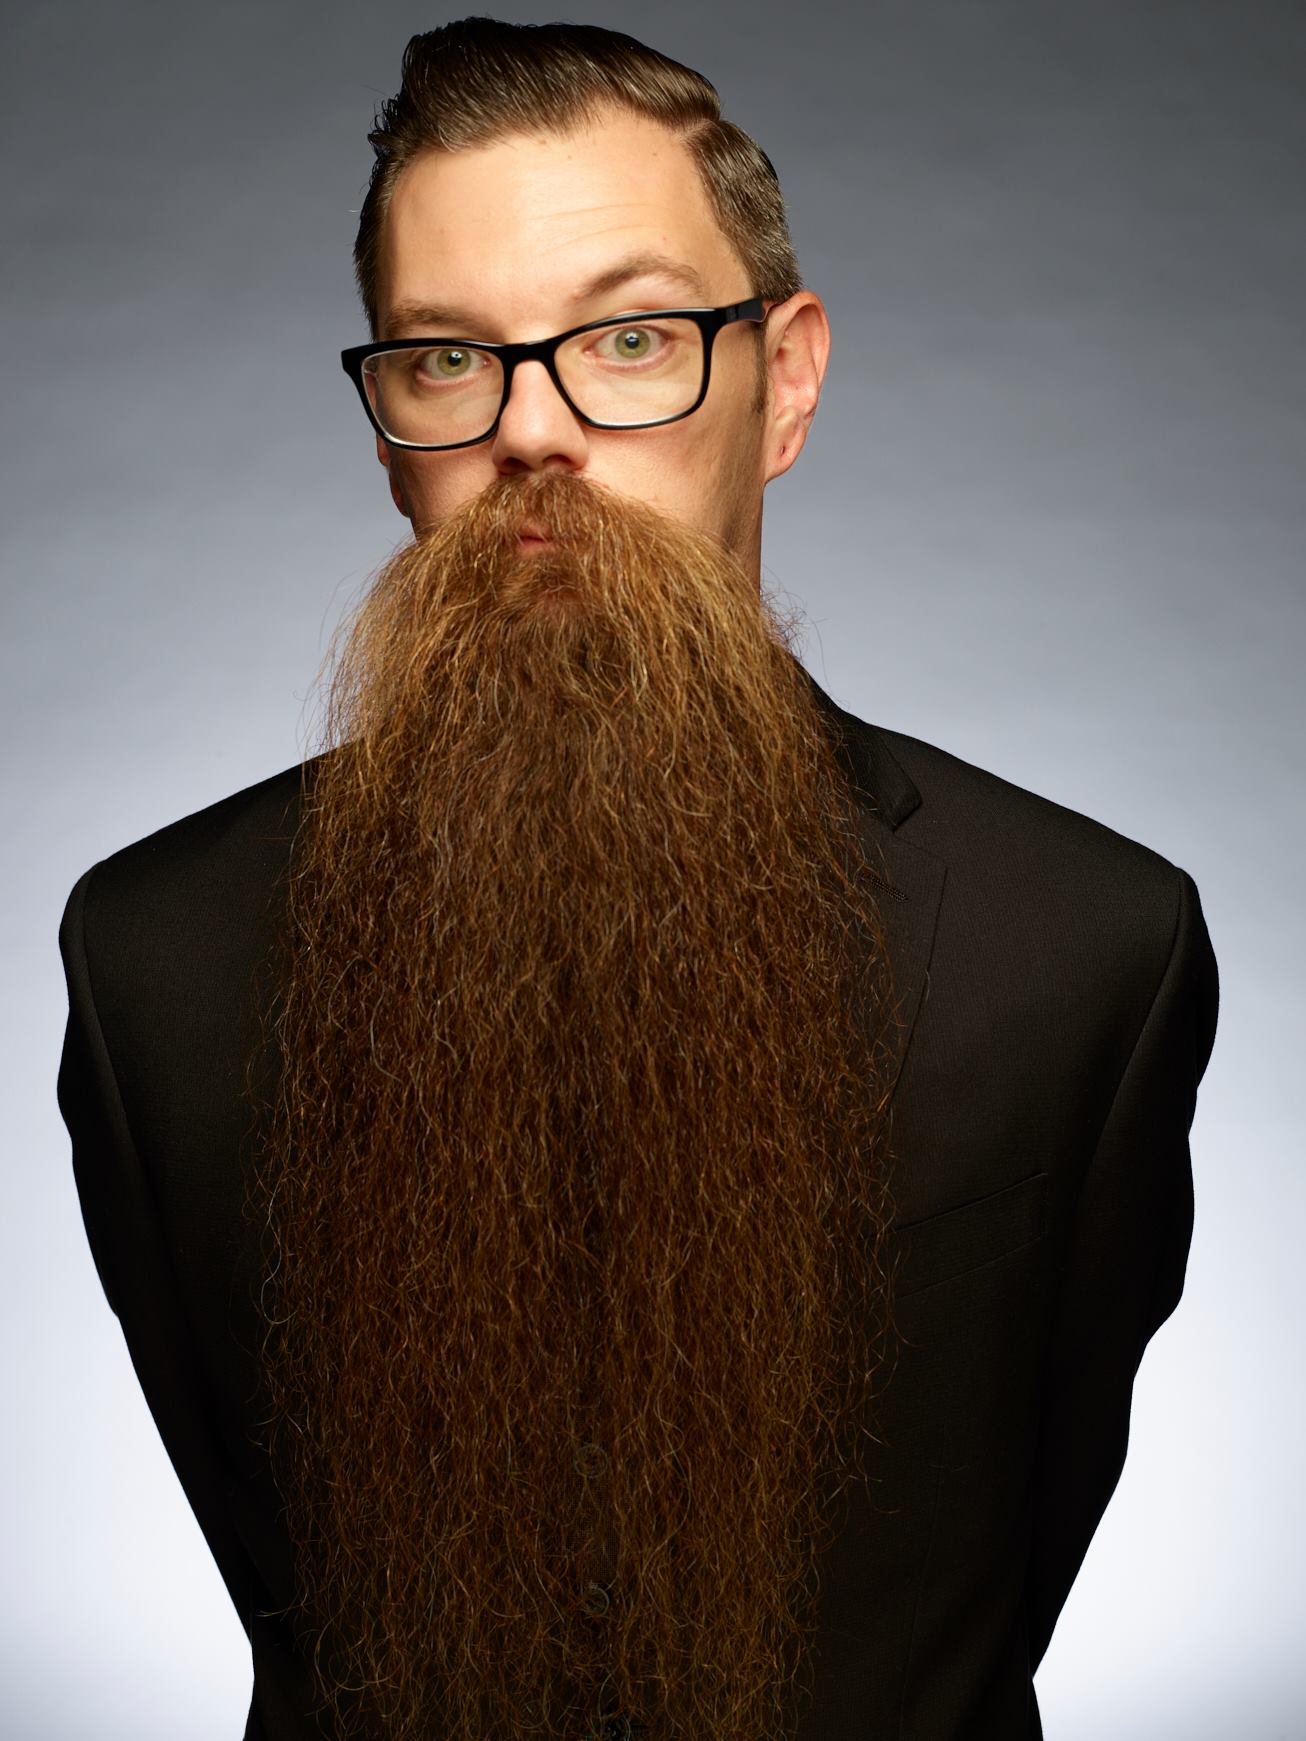 Длинная борода почему